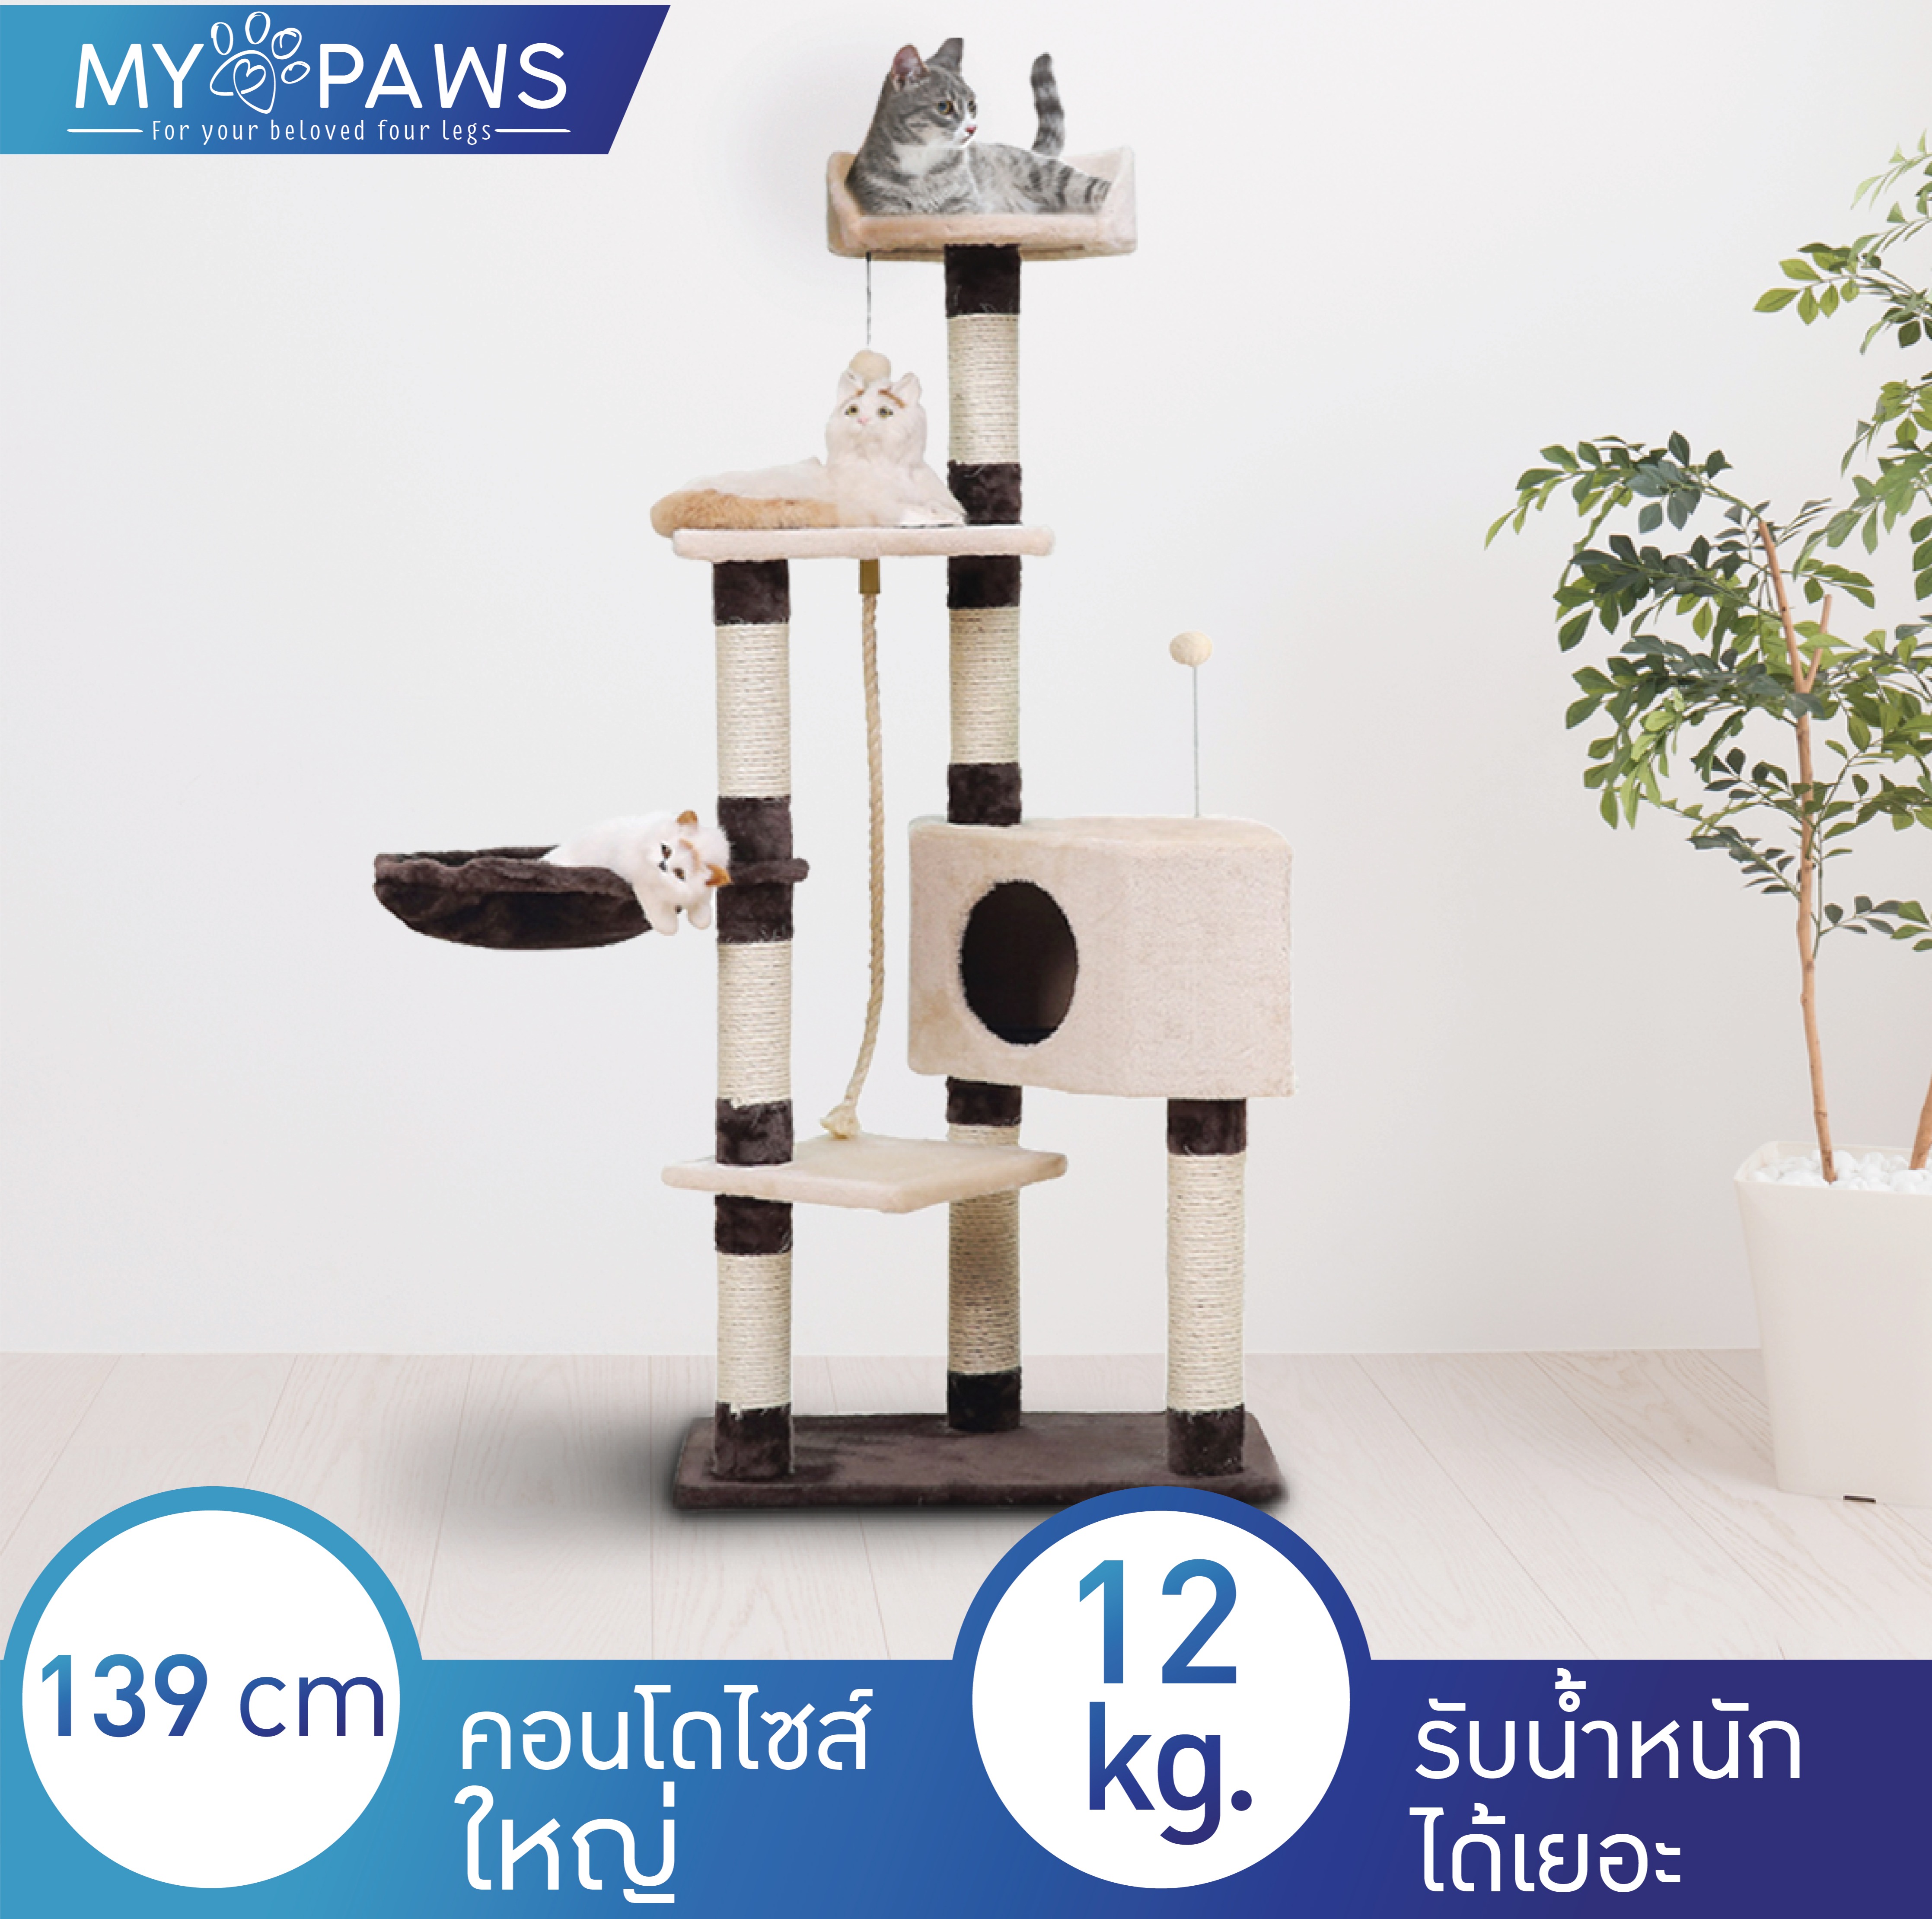 My Paws คอนโดแมว นำเข้าเกรดพรีเมียม รุ่น Full of Fun ไซส์ใหญ่ สูง 139ซม. รับน้ำหนักได้ถึง 12 kg. บ้านแมว ของเล่นแมว